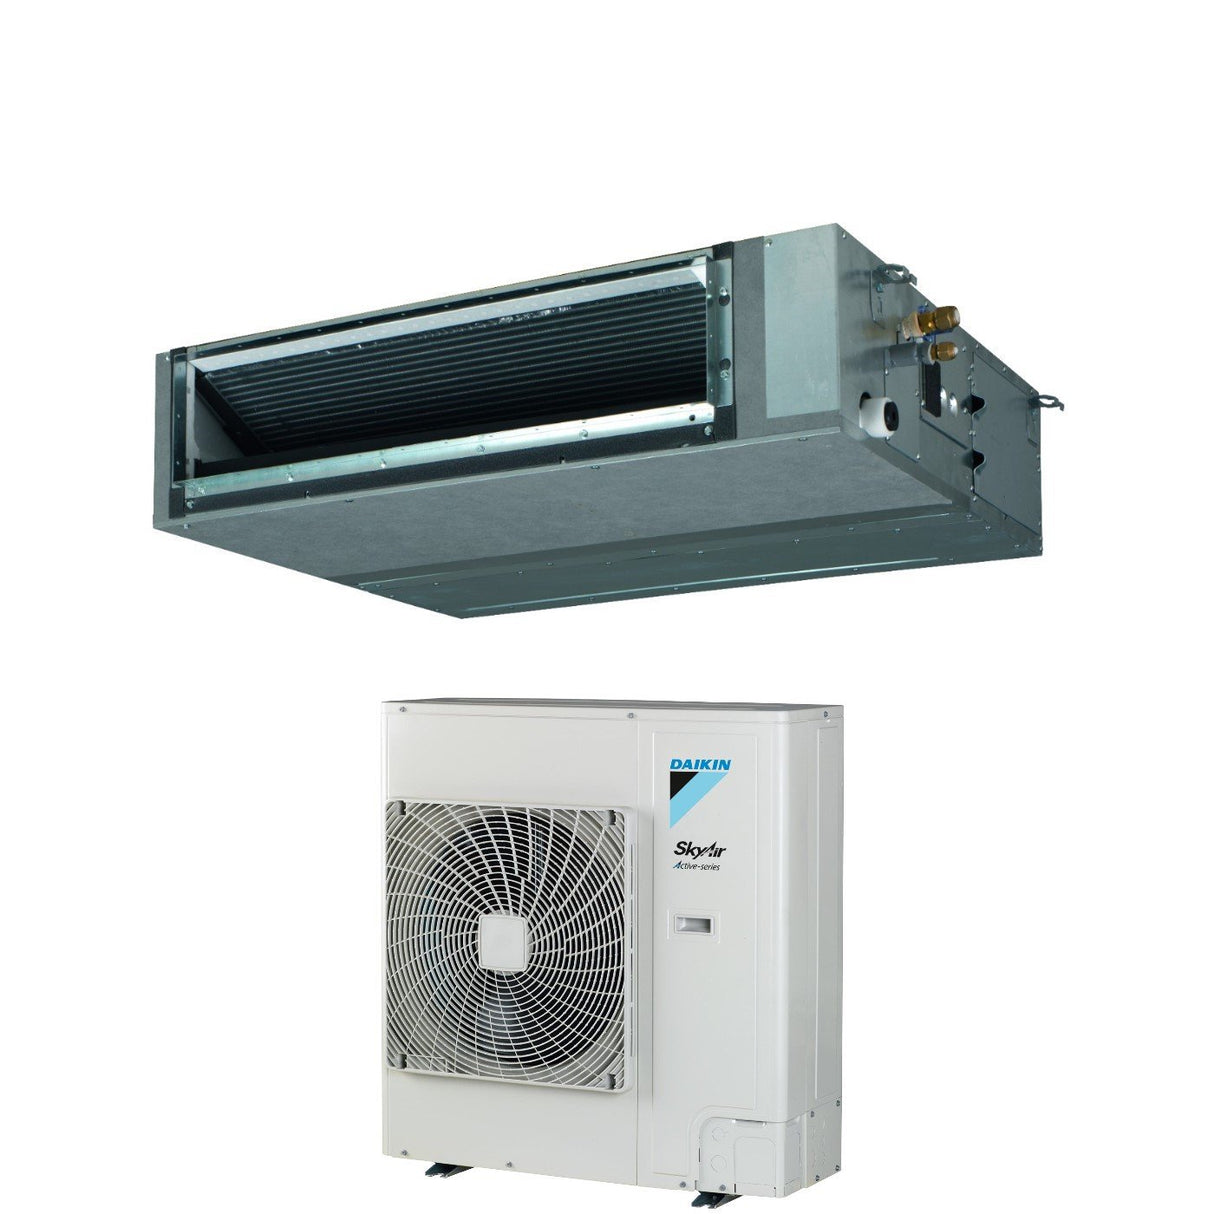 immagine-8-daikin-climatizzatore-condizionatore-daikin-bluevolution-canalizzato-media-prevalenza-36000-btu-fba100a-rzasg100mv1-monofase-r-32-wi-fi-optional